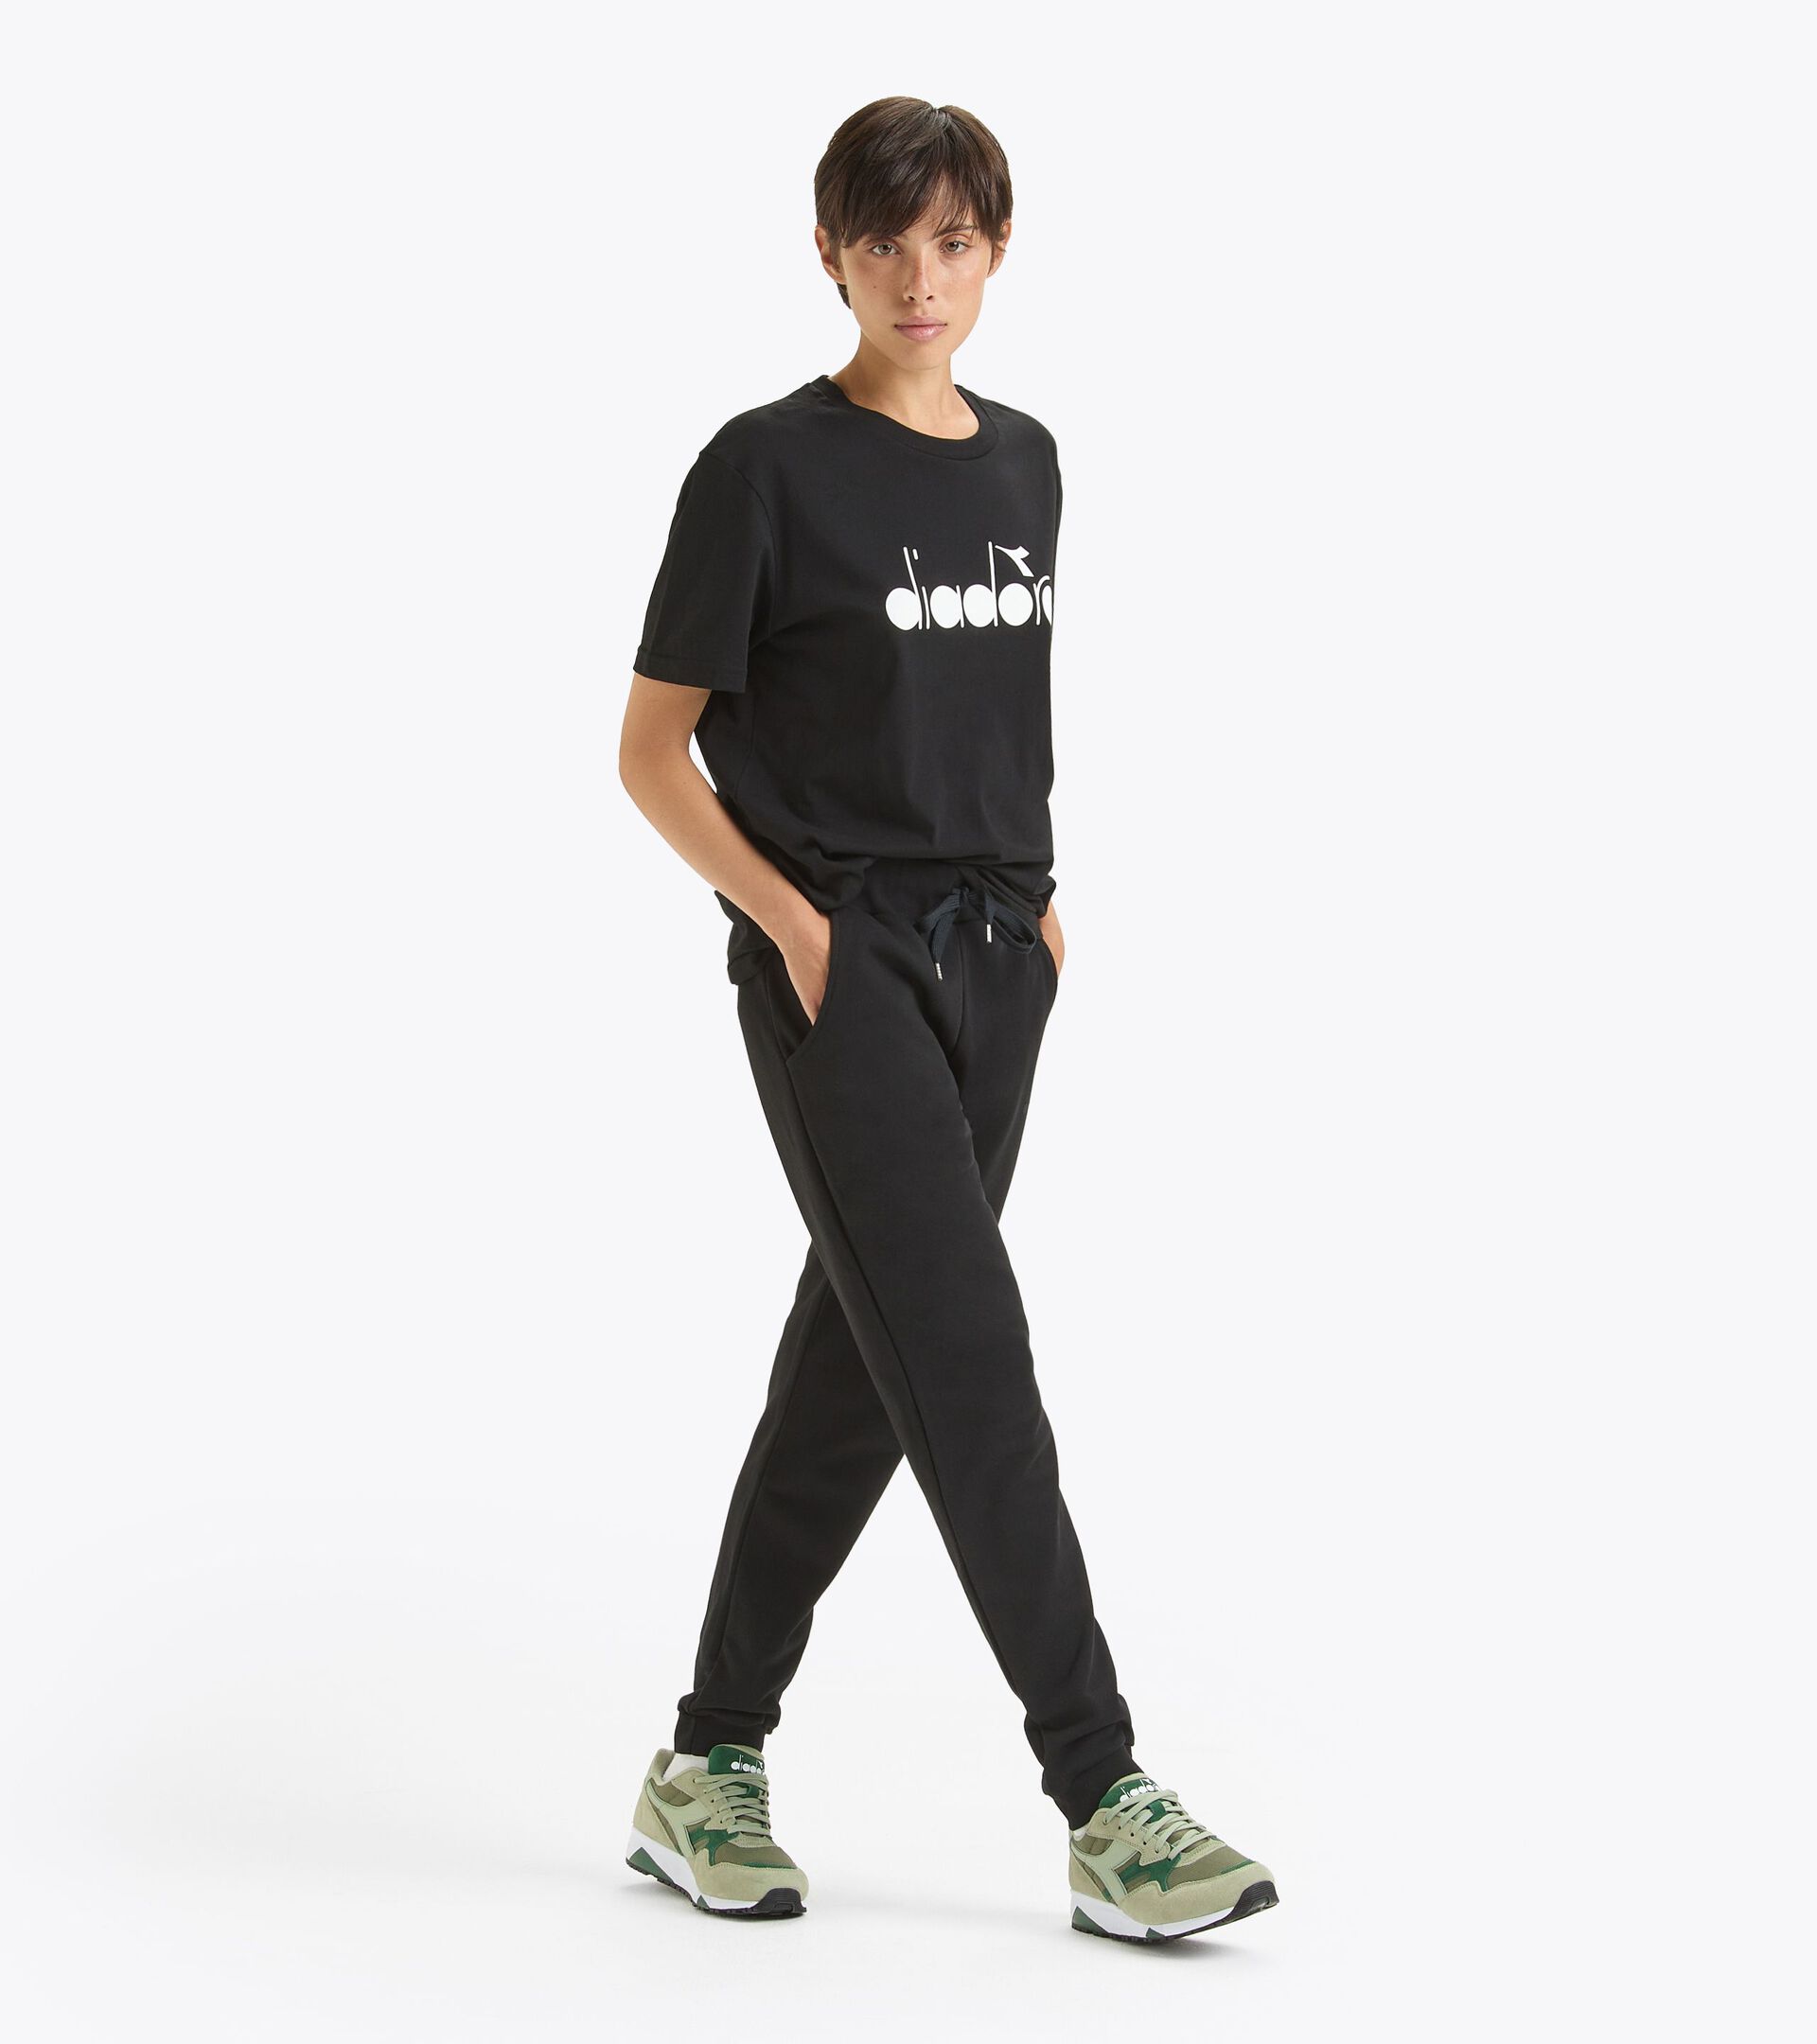 Pantalón deportivo - Made in Italy - Gender neutral PANTS LOGO NEGRO - Diadora